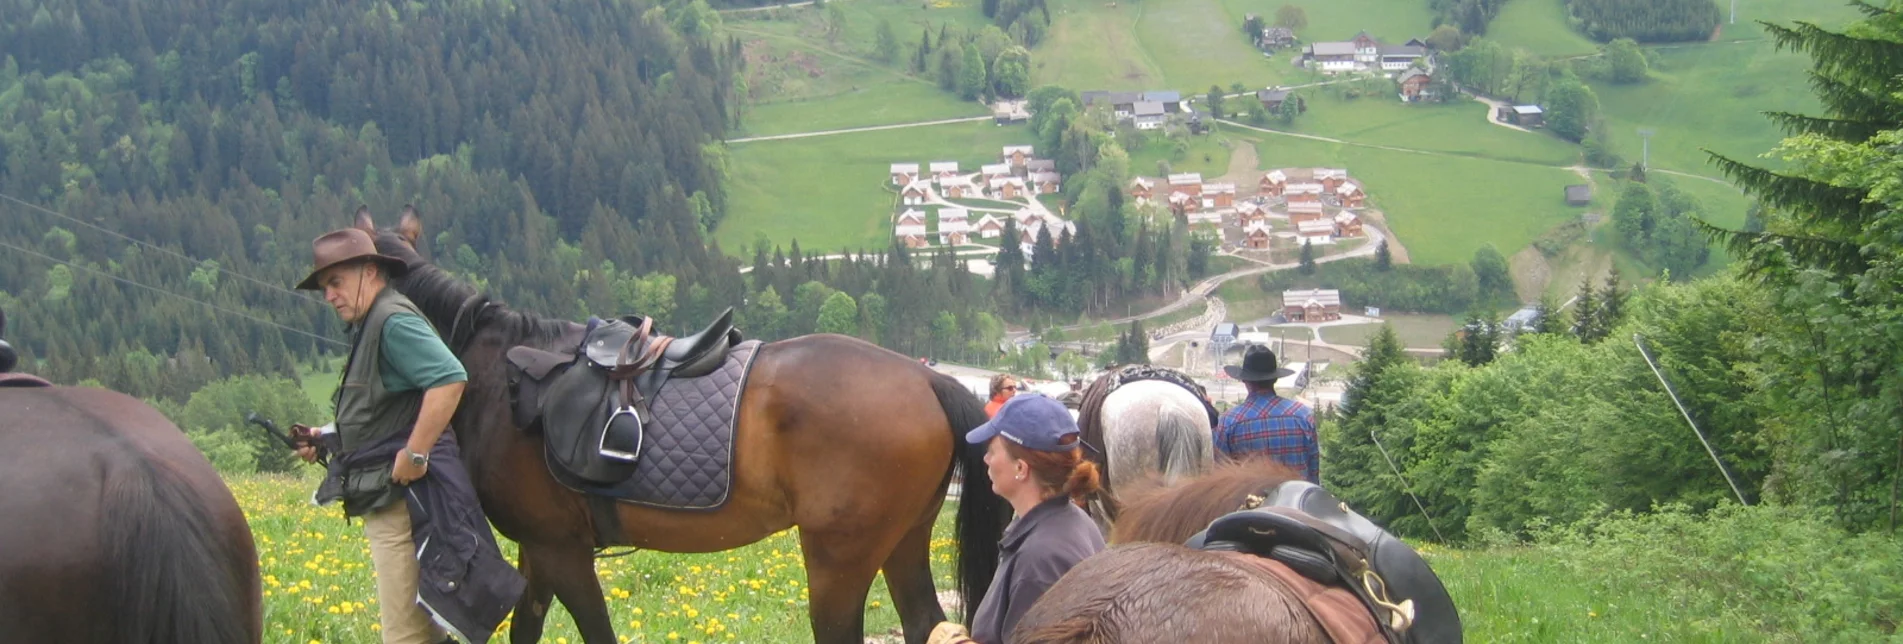 Horse Riding Riding trail from St. Agatha to Altaussee - Touren-Impression #1 | © Reitgemeinschaft Ausseerland